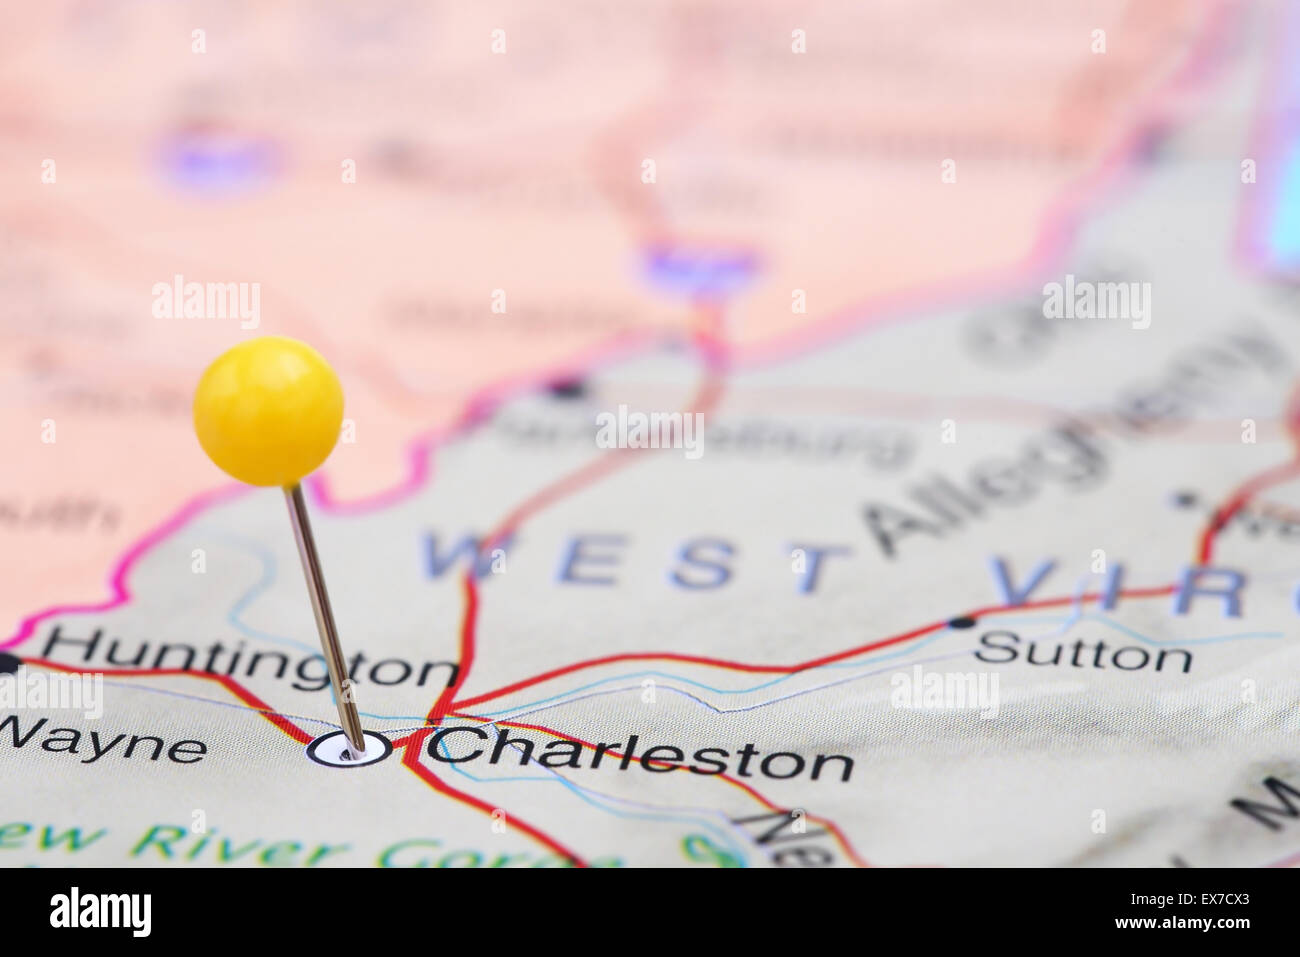 Charleston imperniata su una mappa degli STATI UNITI D'AMERICA Foto Stock